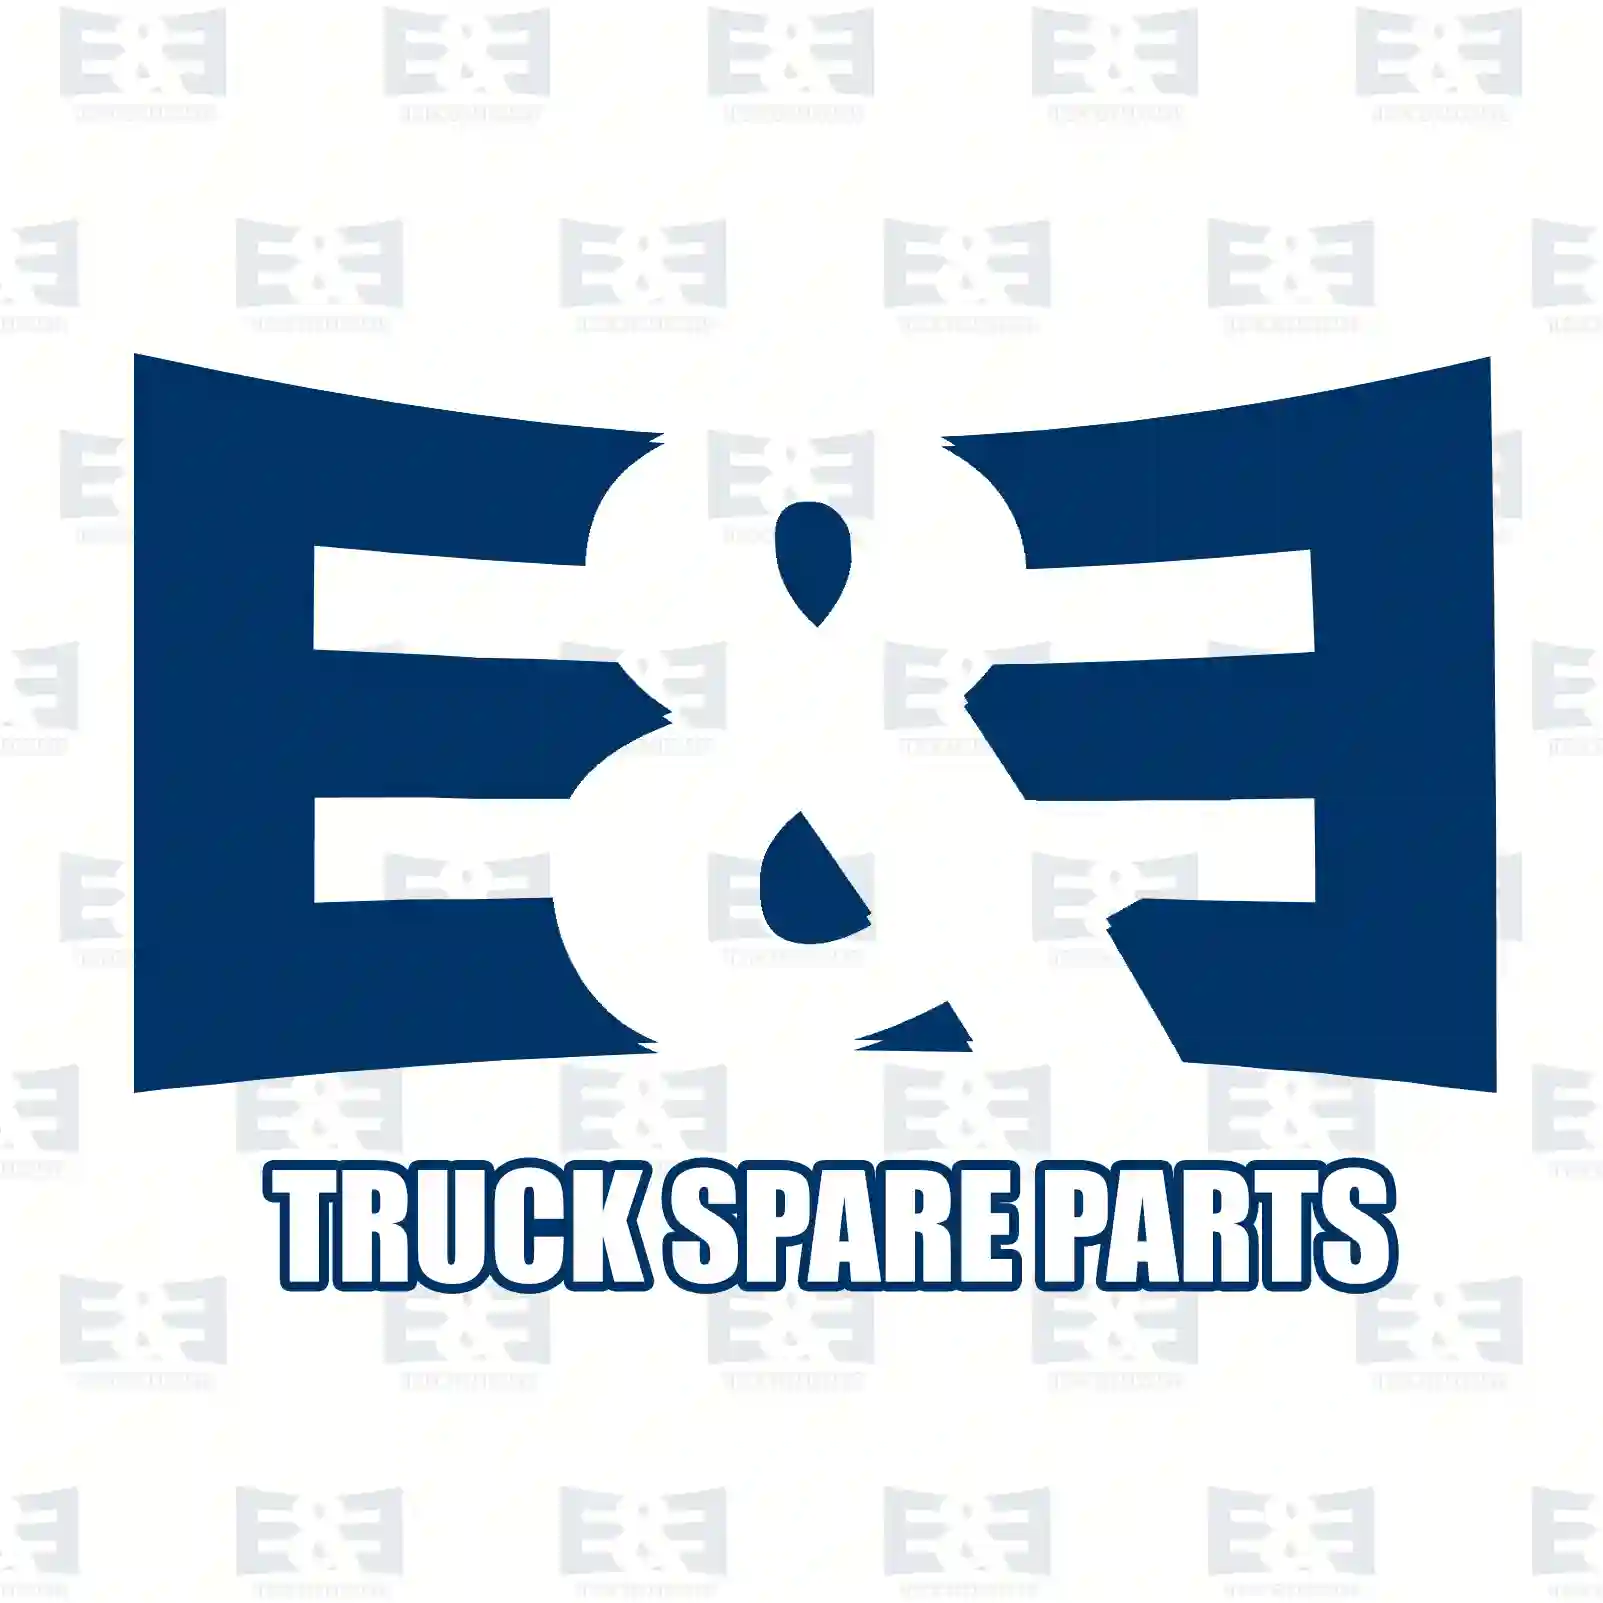 Guide sleeve, 2E2278750, 1521979 ||  2E2278750 E&E Truck Spare Parts | Truck Spare Parts, Auotomotive Spare Parts Guide sleeve, 2E2278750, 1521979 ||  2E2278750 E&E Truck Spare Parts | Truck Spare Parts, Auotomotive Spare Parts